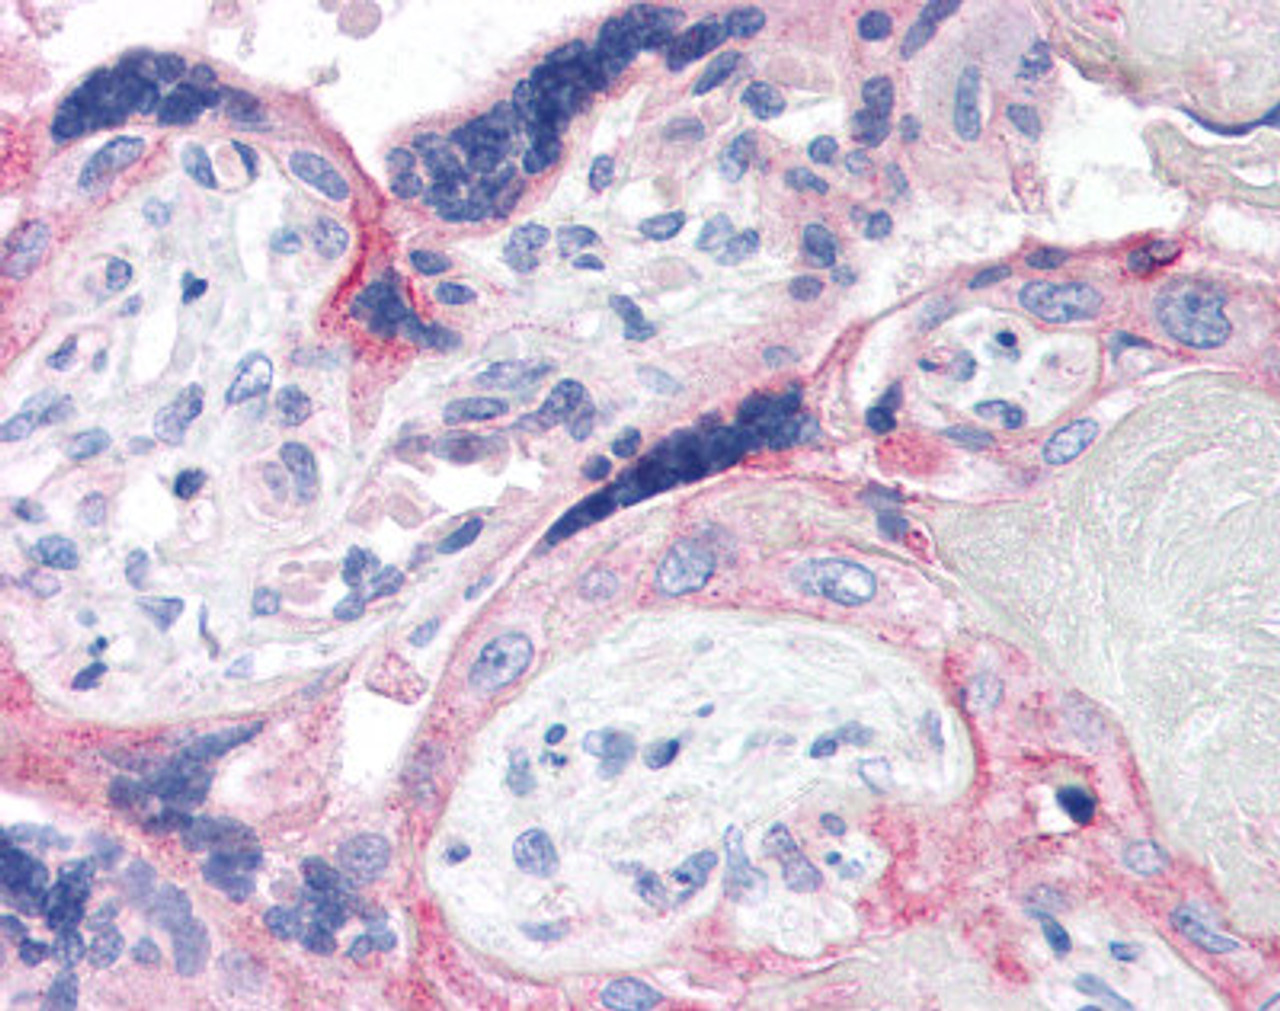 Immunohistochemistry staining of CRH in placenta tissue using CRH Antibody.